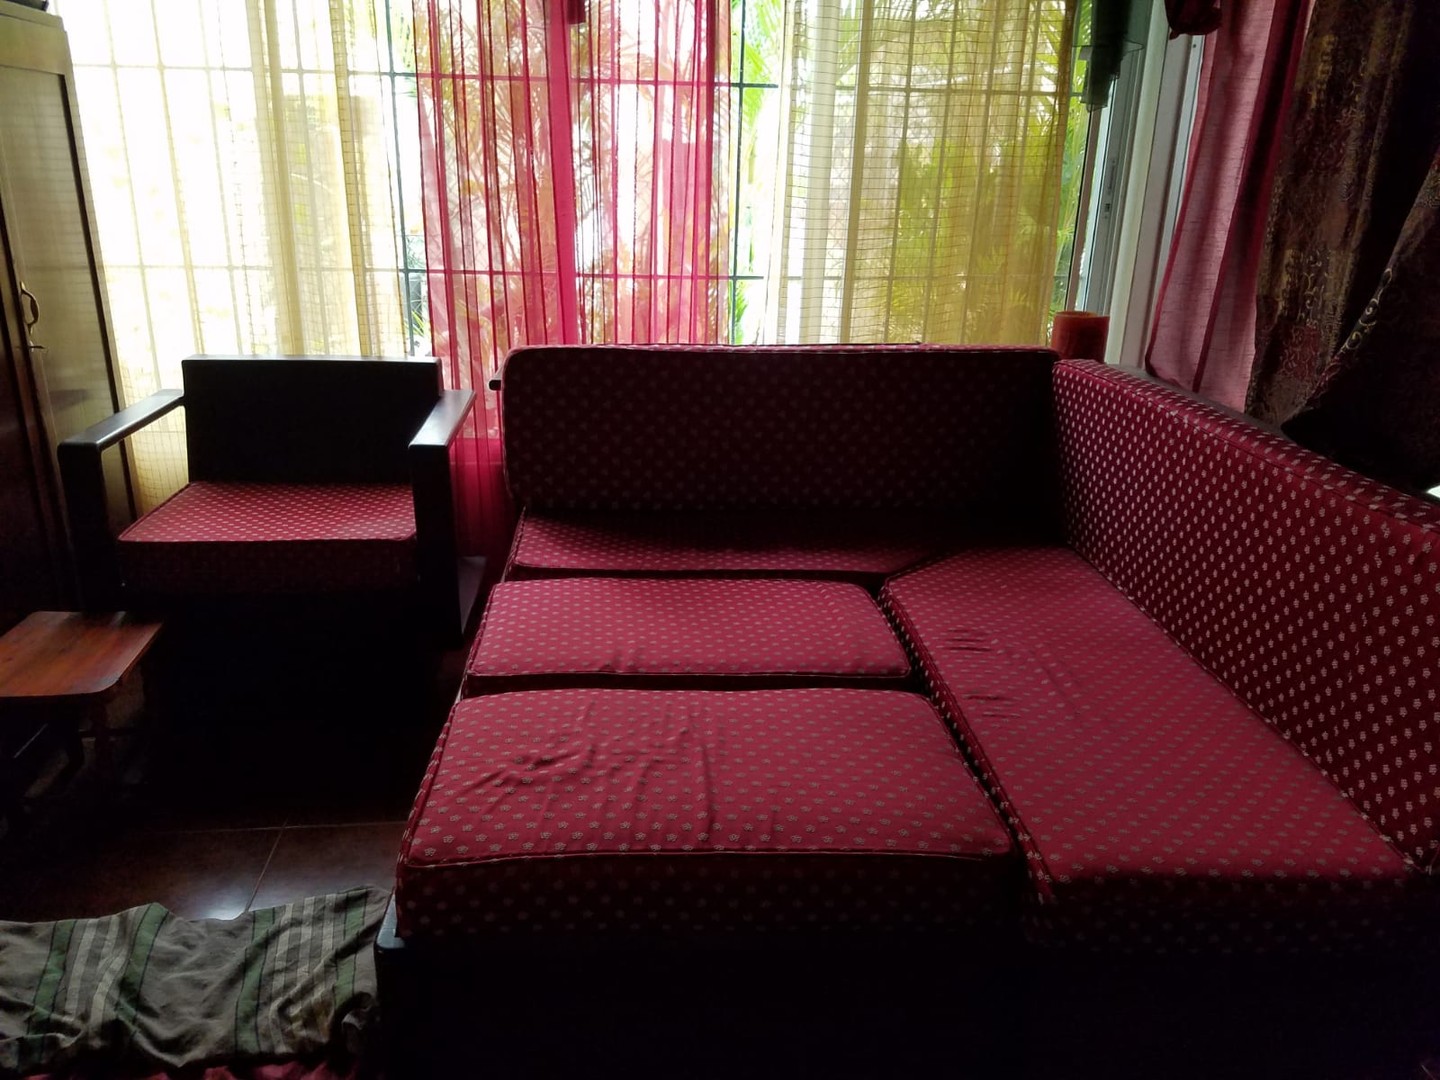 muebles y colchones - Sofa cama con sillas de madera Caoba Antigua